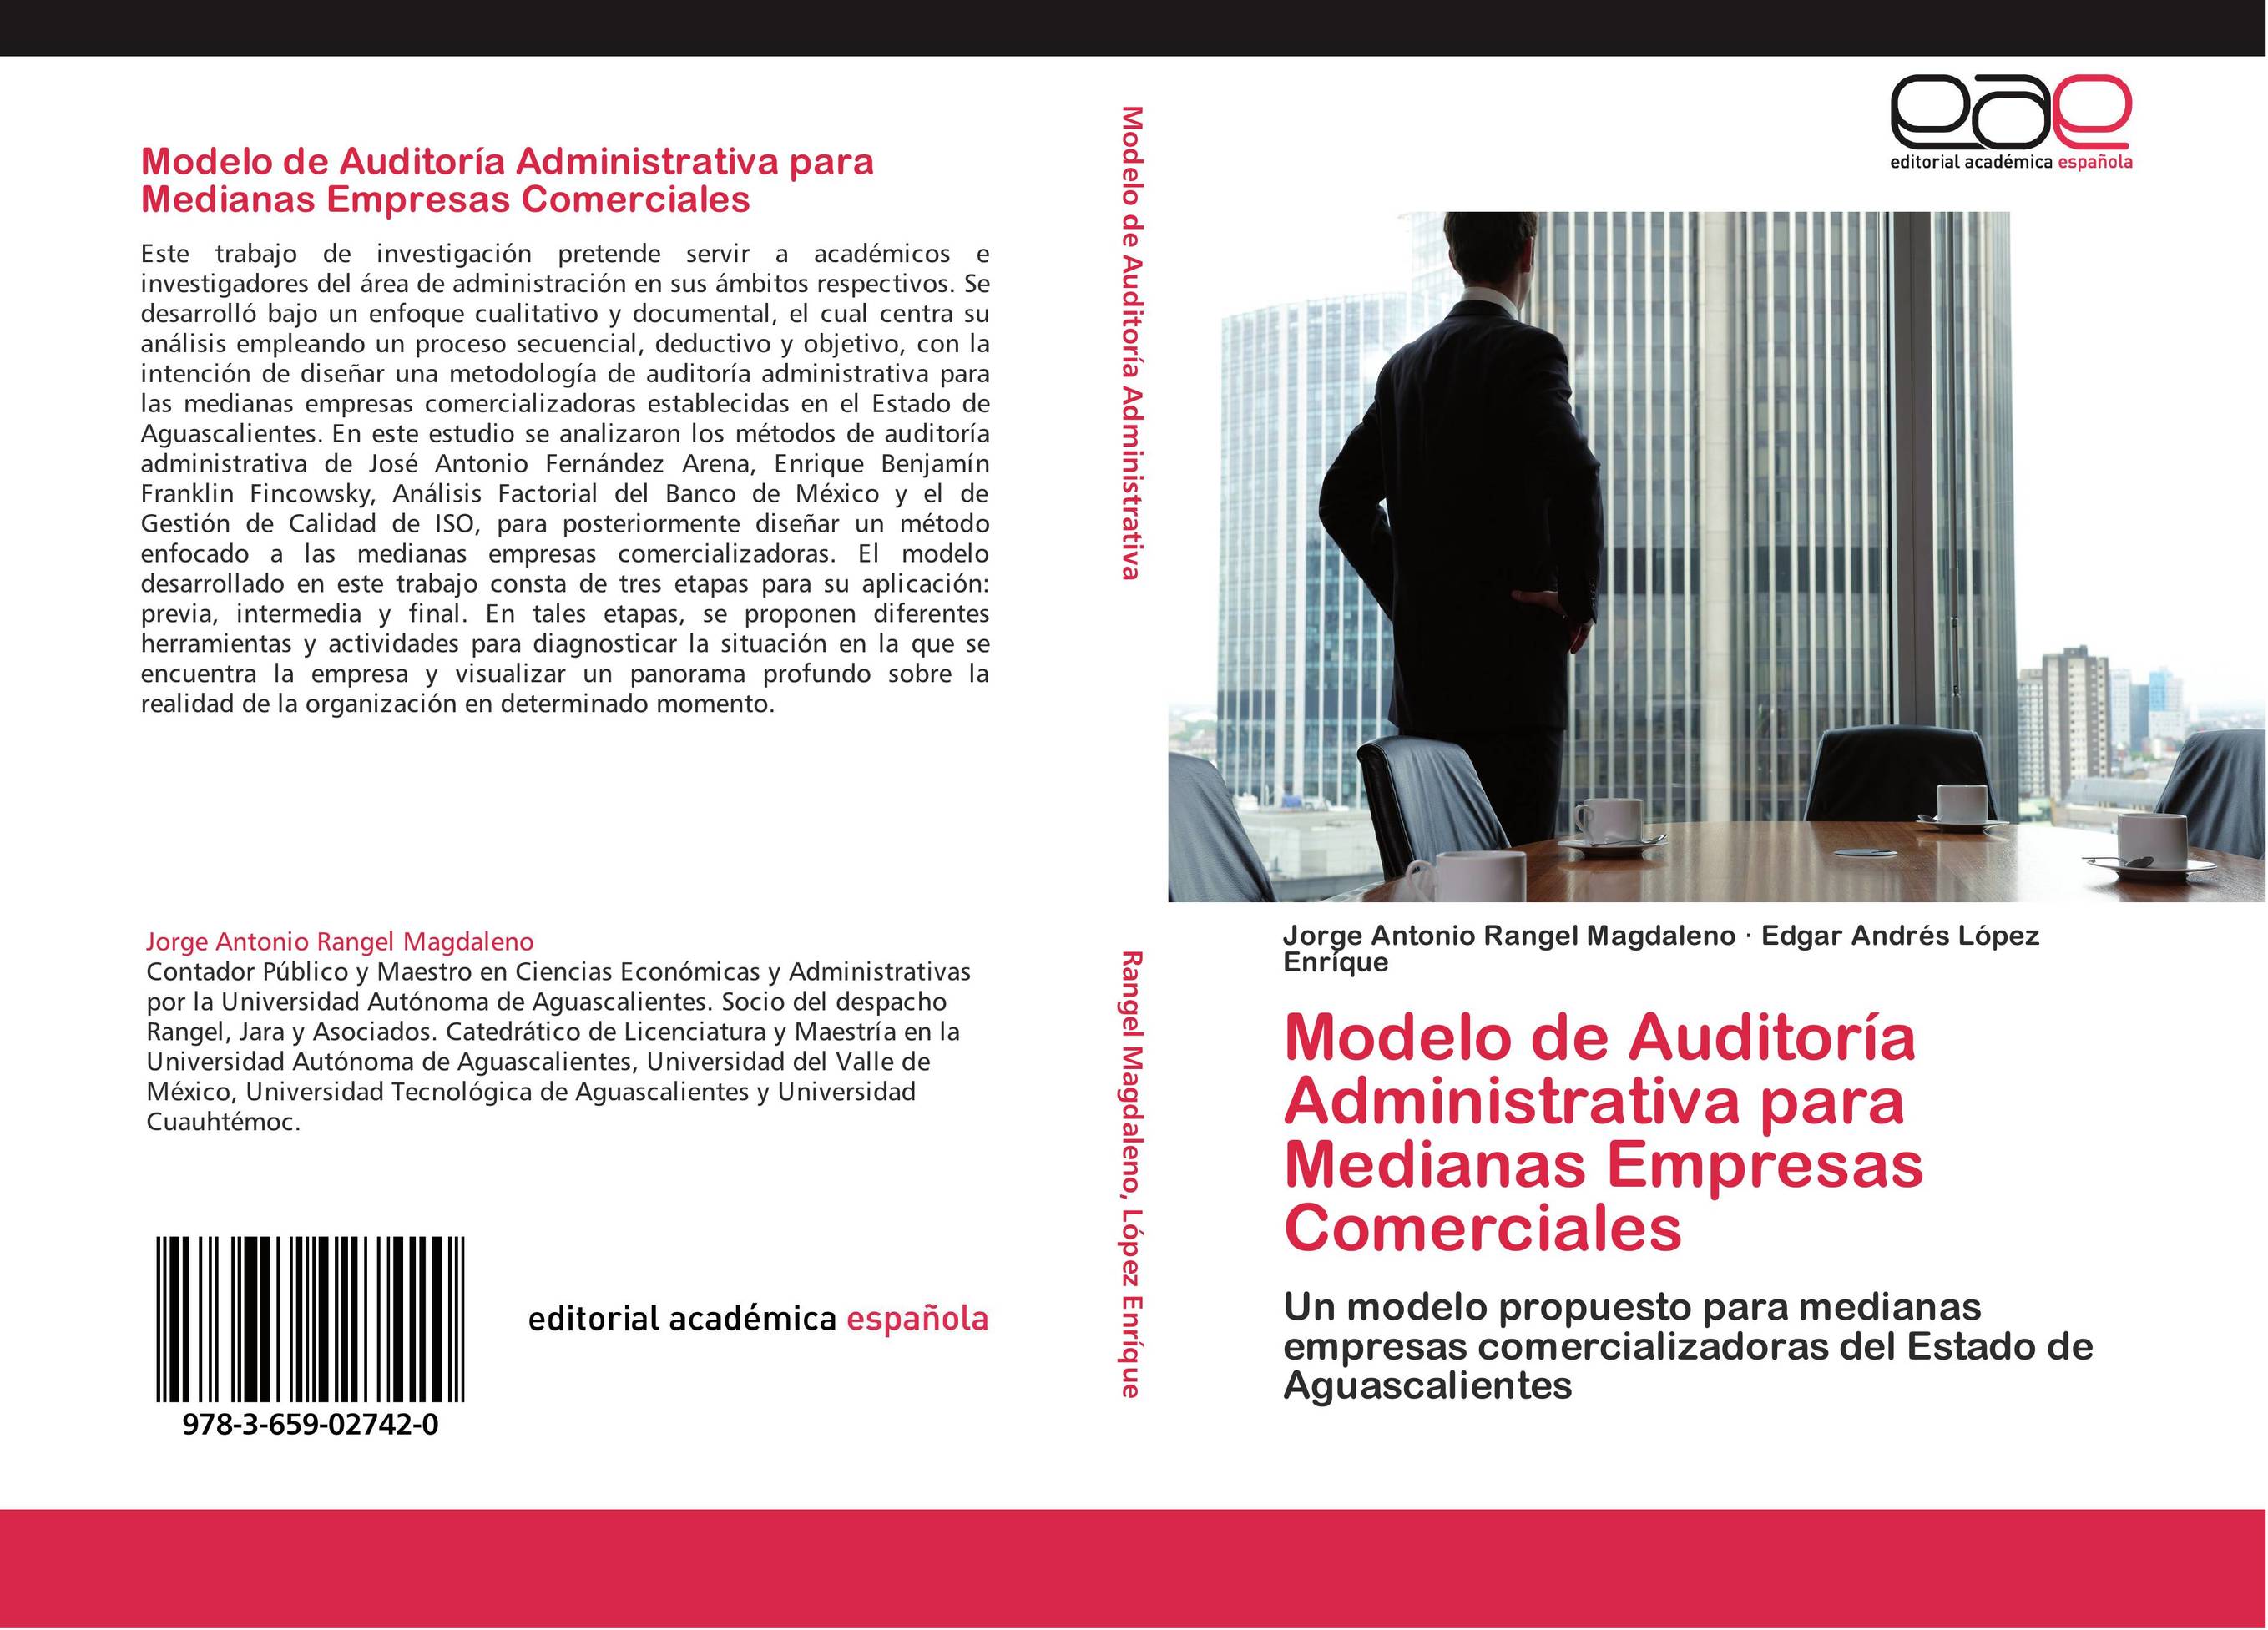 Modelo de Auditoría Administrativa para Medianas Empresas Comerciales